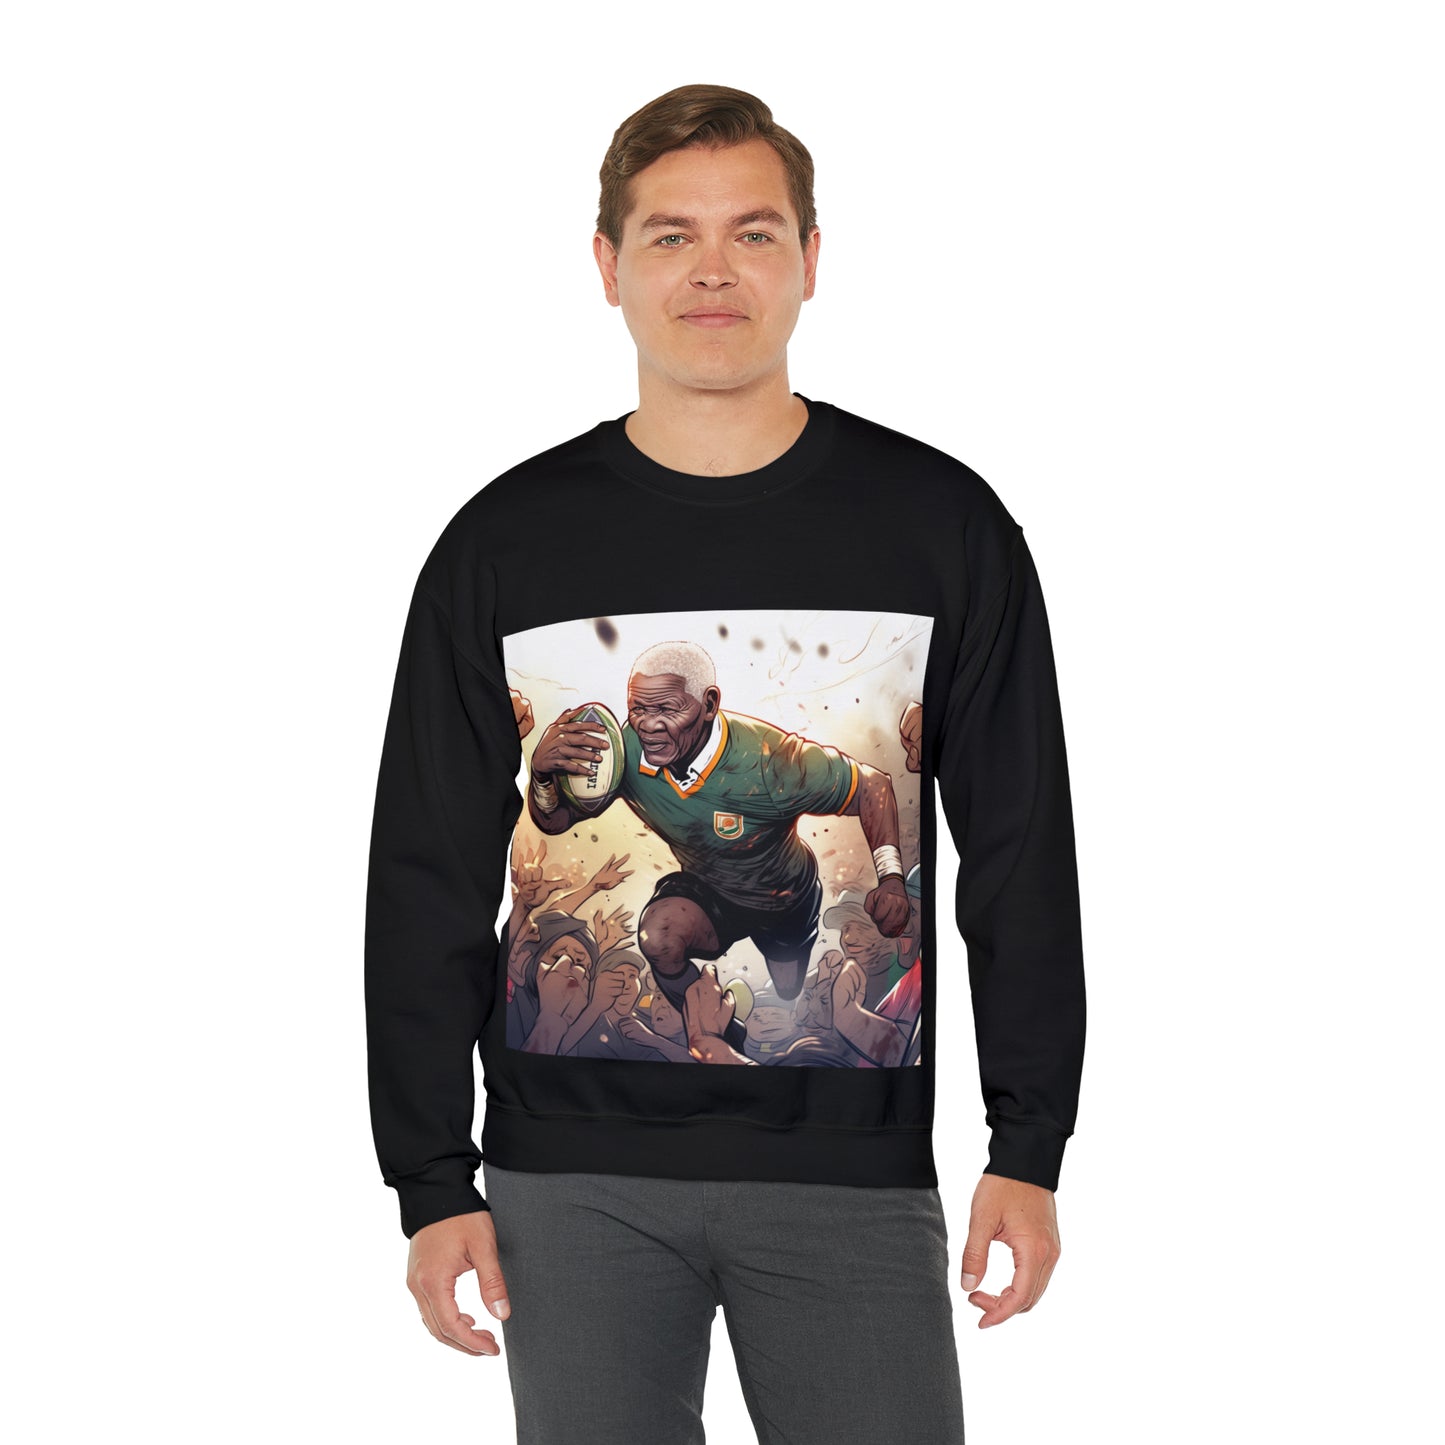 Rugby Mandela - black sweatshirt